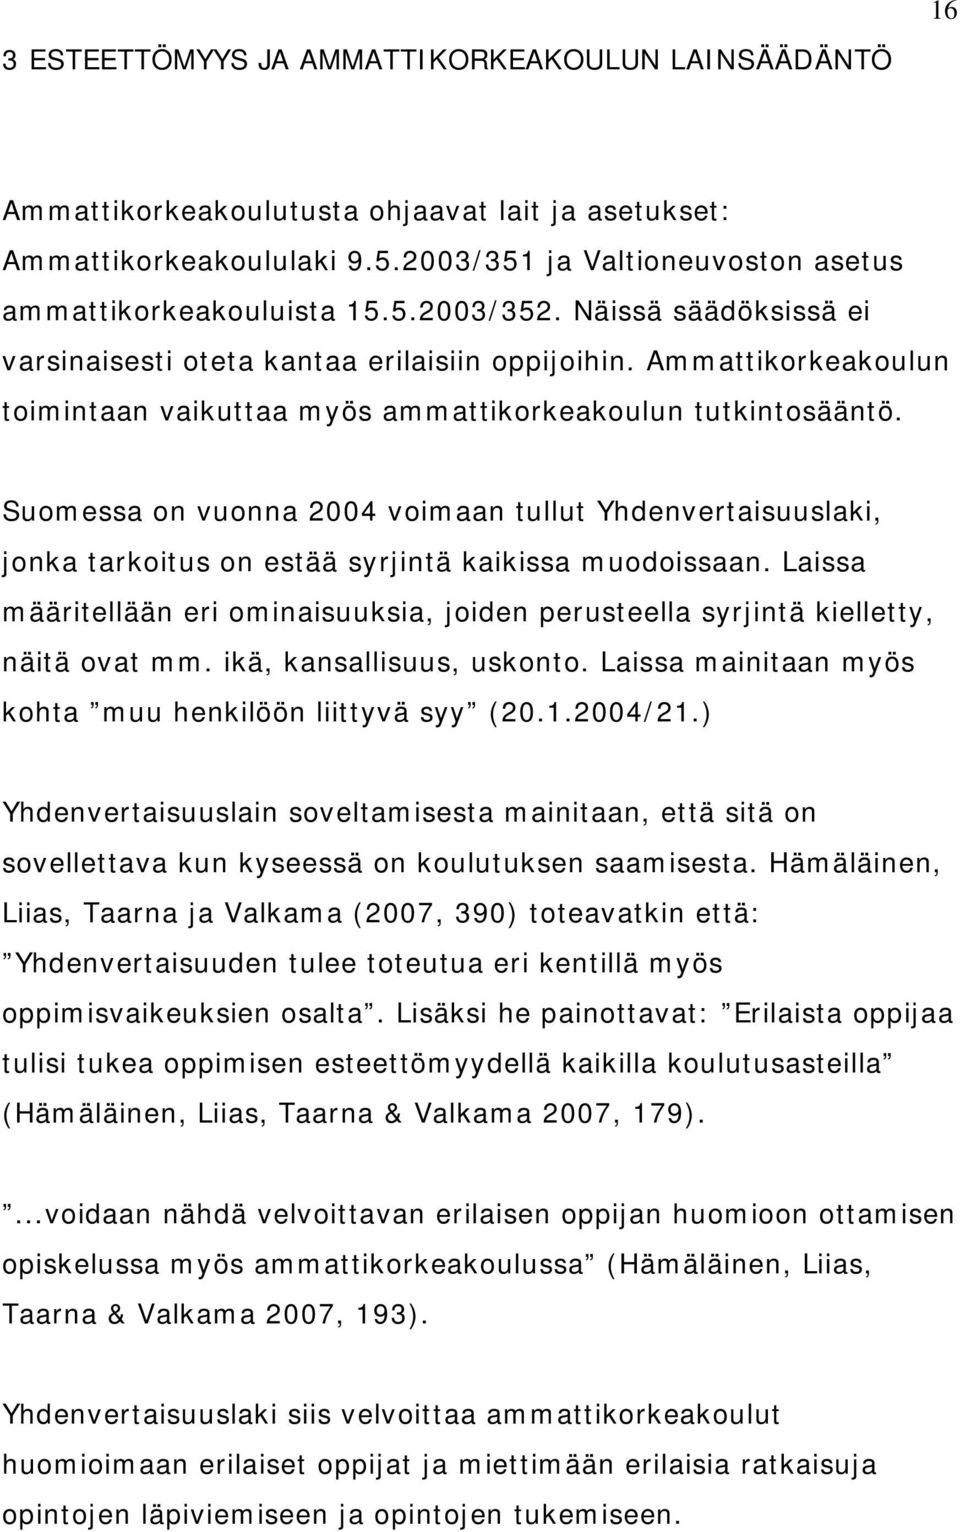 Suomessa on vuonna 2004 voimaan tullut Yhdenvertaisuuslaki, jonka tarkoitus on estää syrjintä kaikissa muodoissaan.